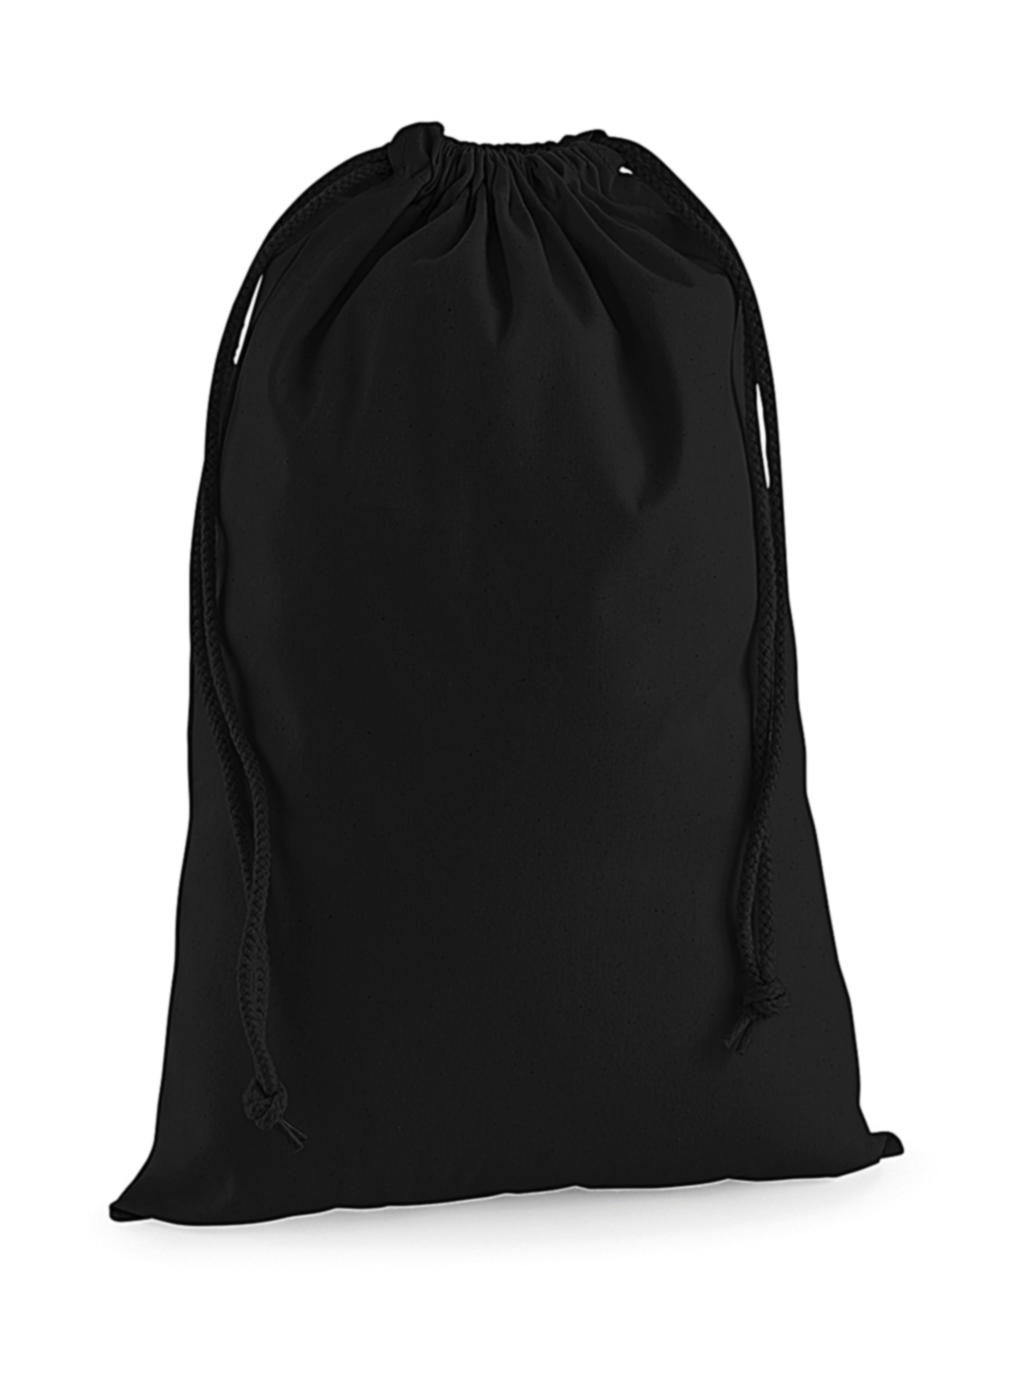  Premium Cotton Stuff Bag in Farbe Black